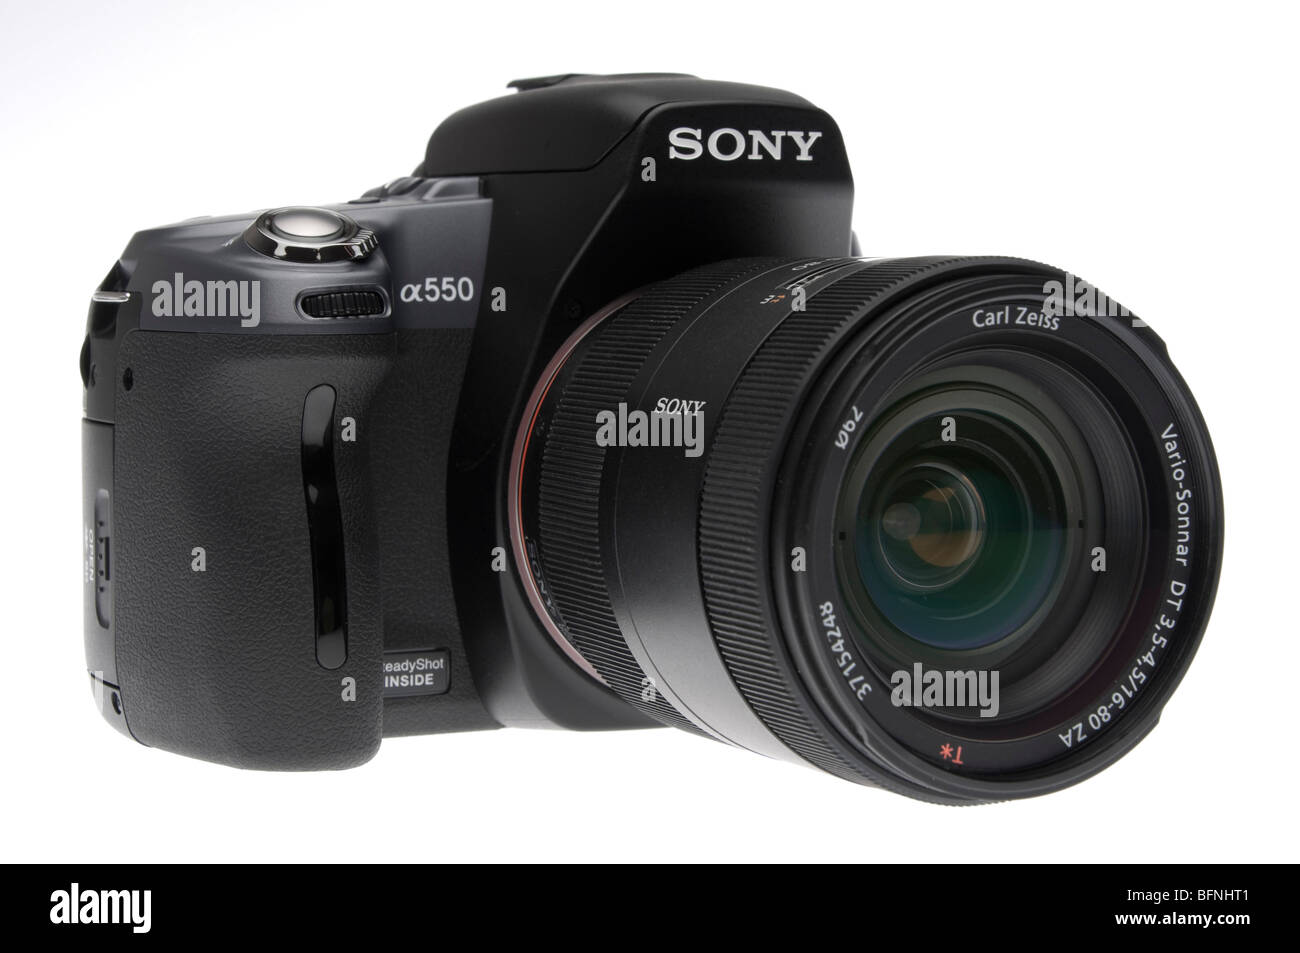 Sony Alpha 550 digitale SLR-Kamera mit Carl Zeiss 16-80mm Zoom-Objektiv - ein Produkt von einem branding und Herstellung Vereinbarung Stockfoto